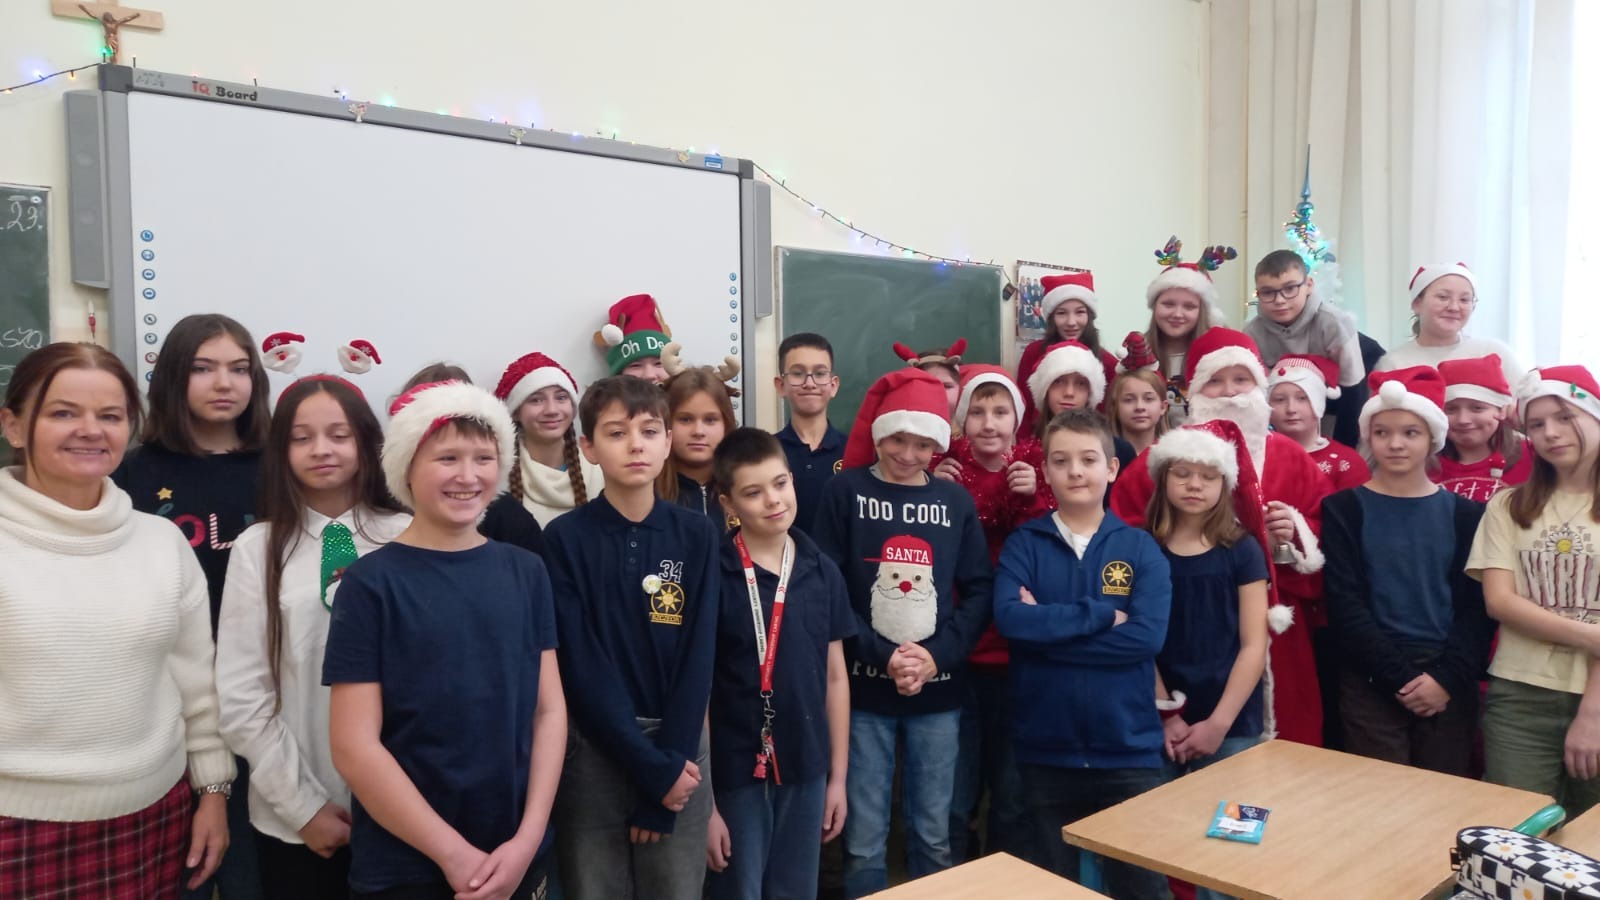 6 grudnia naszą szkołę odwiedził Święty Mikołaj, który wraz ze swoimi elfami rozdawał wszystkim uczniom czekolady zakupione i sfinansowane przez Radę Rodziców.